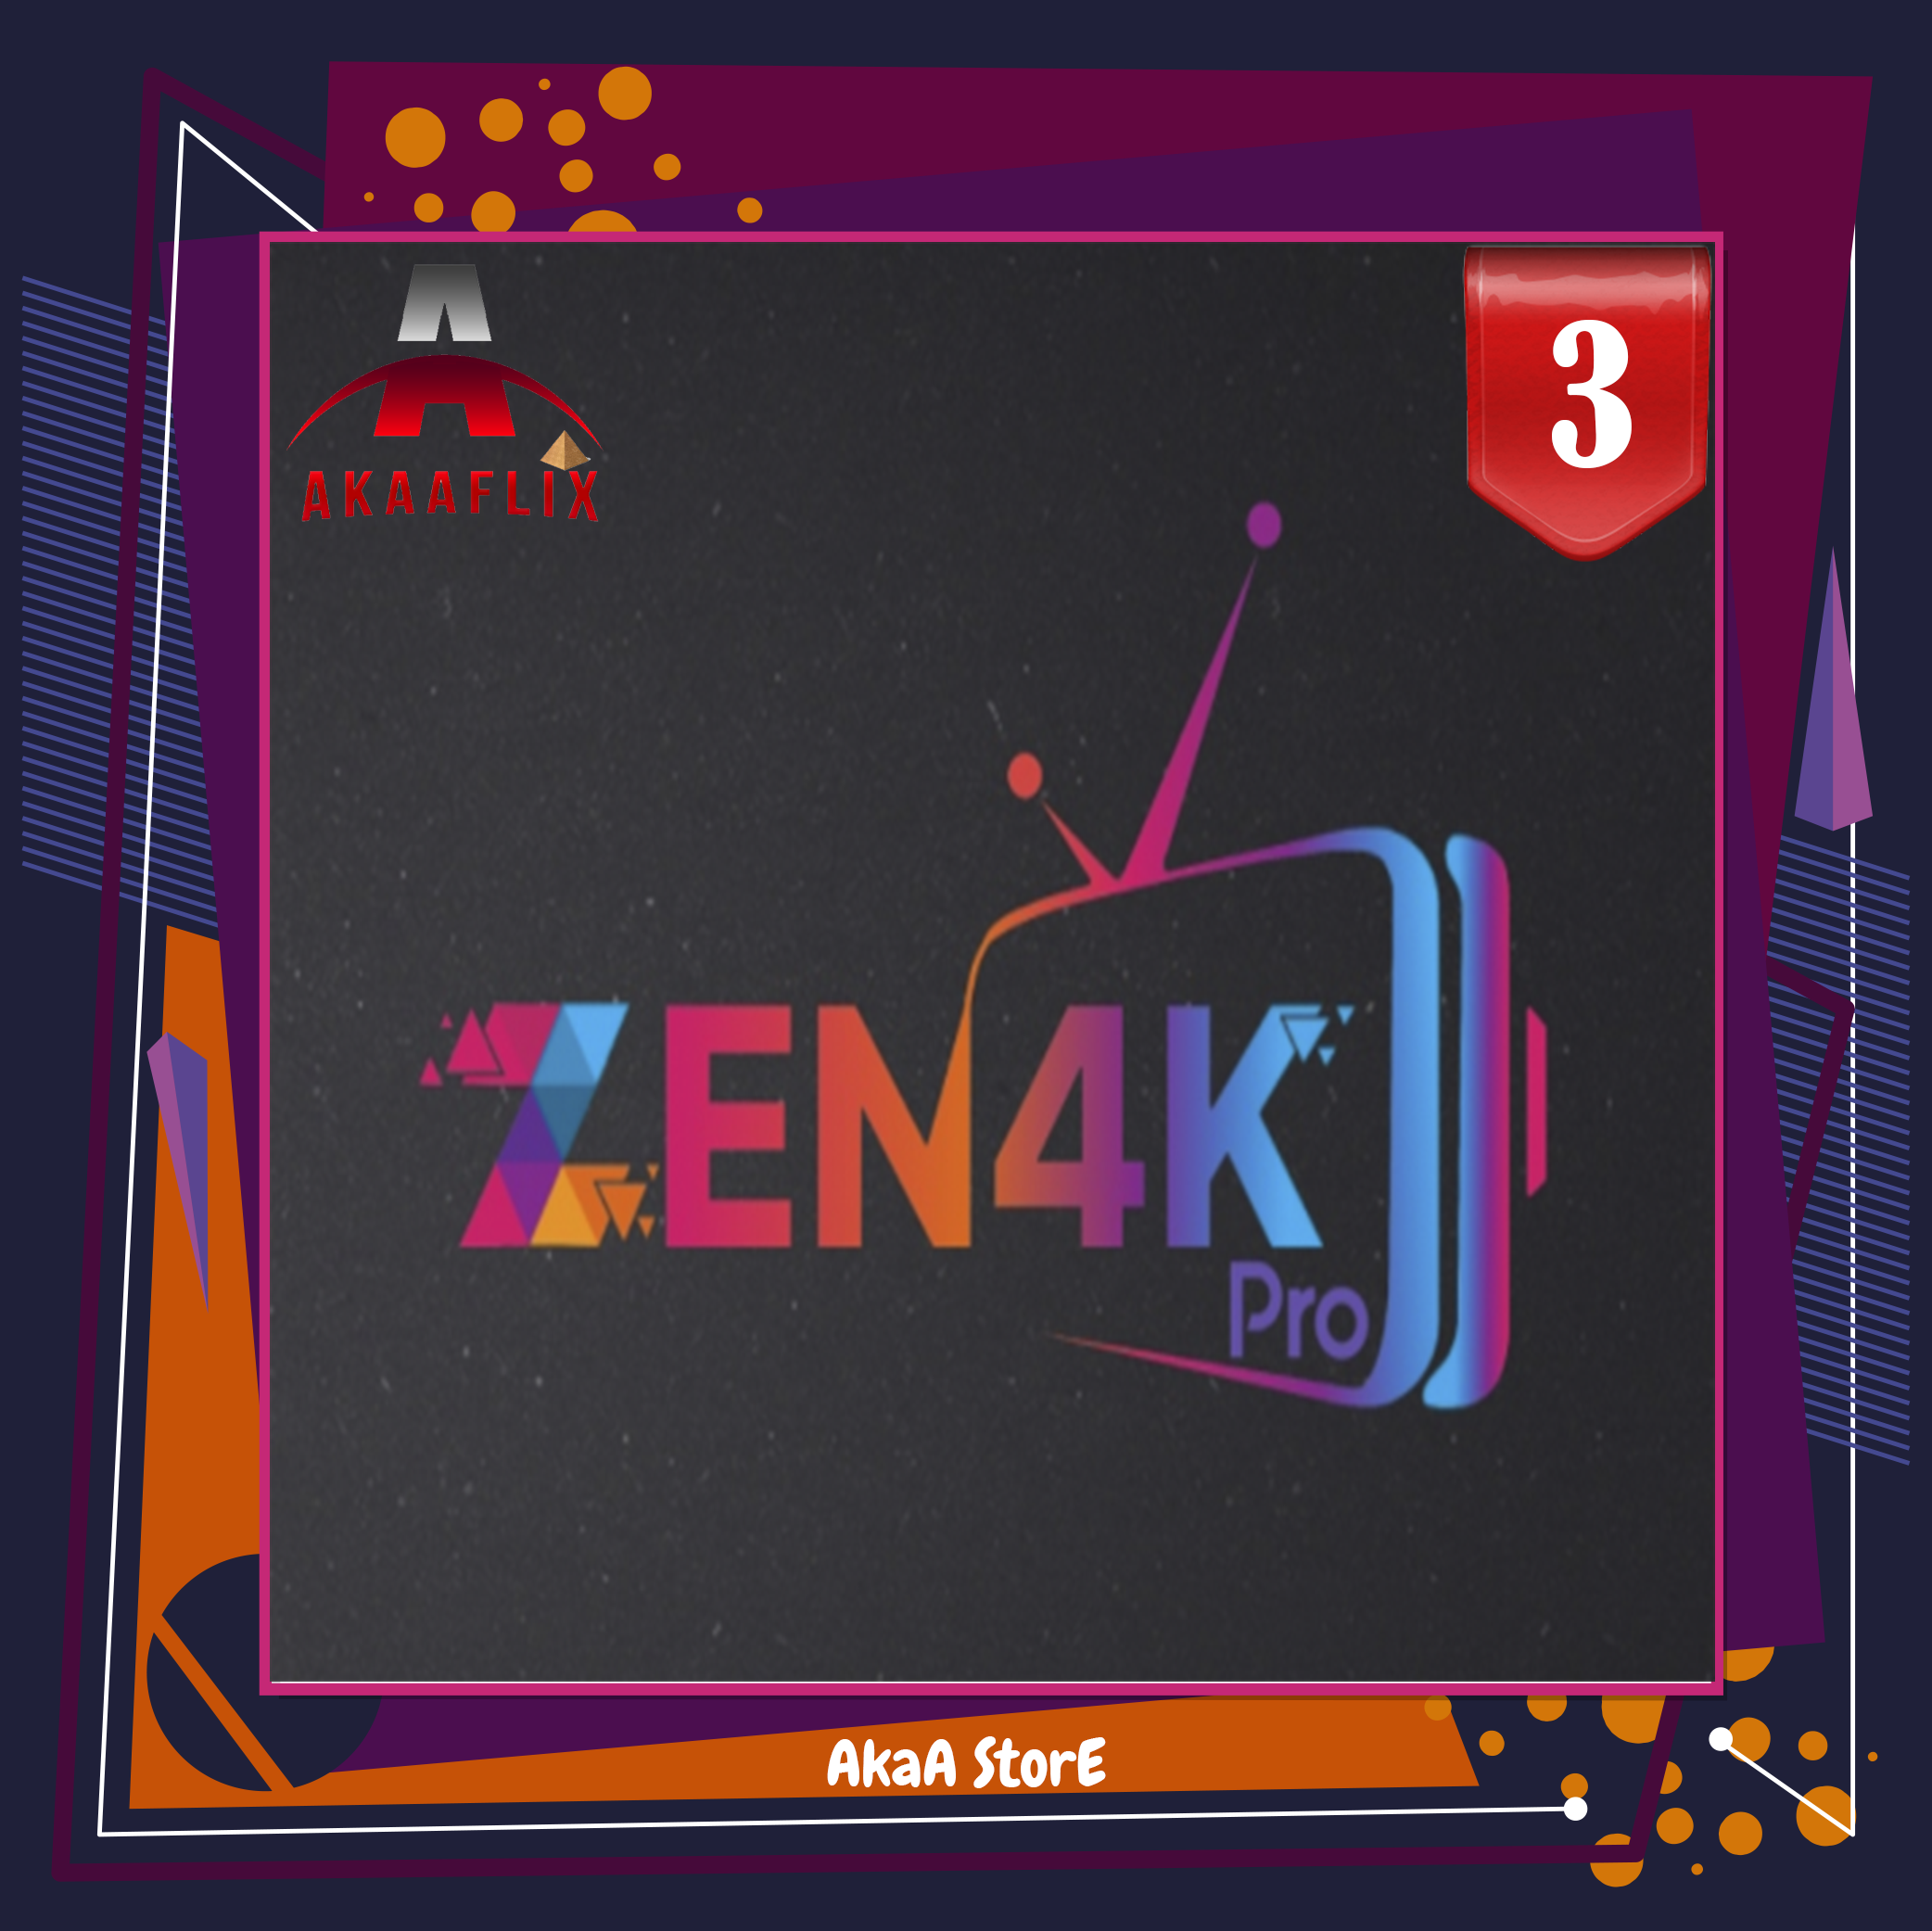 اشتراك ZEN4K زين 3 شهر